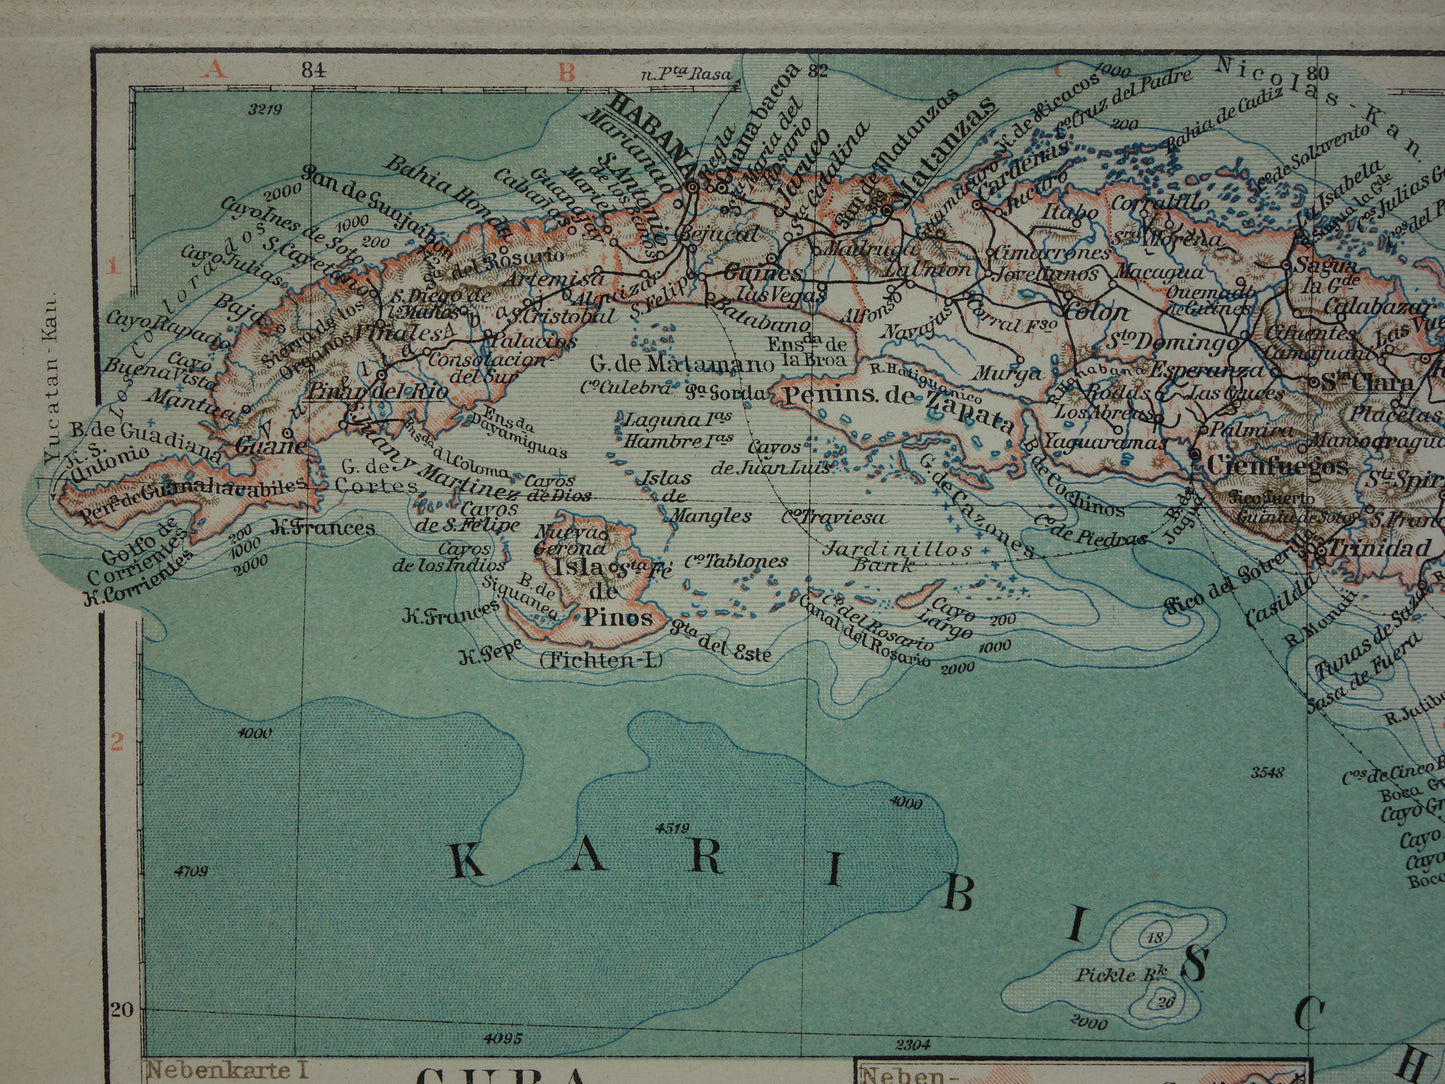 CUBA oude kaart uit 1905 van Cuba en Jamaica originele kleine antieke Duitse landkaart